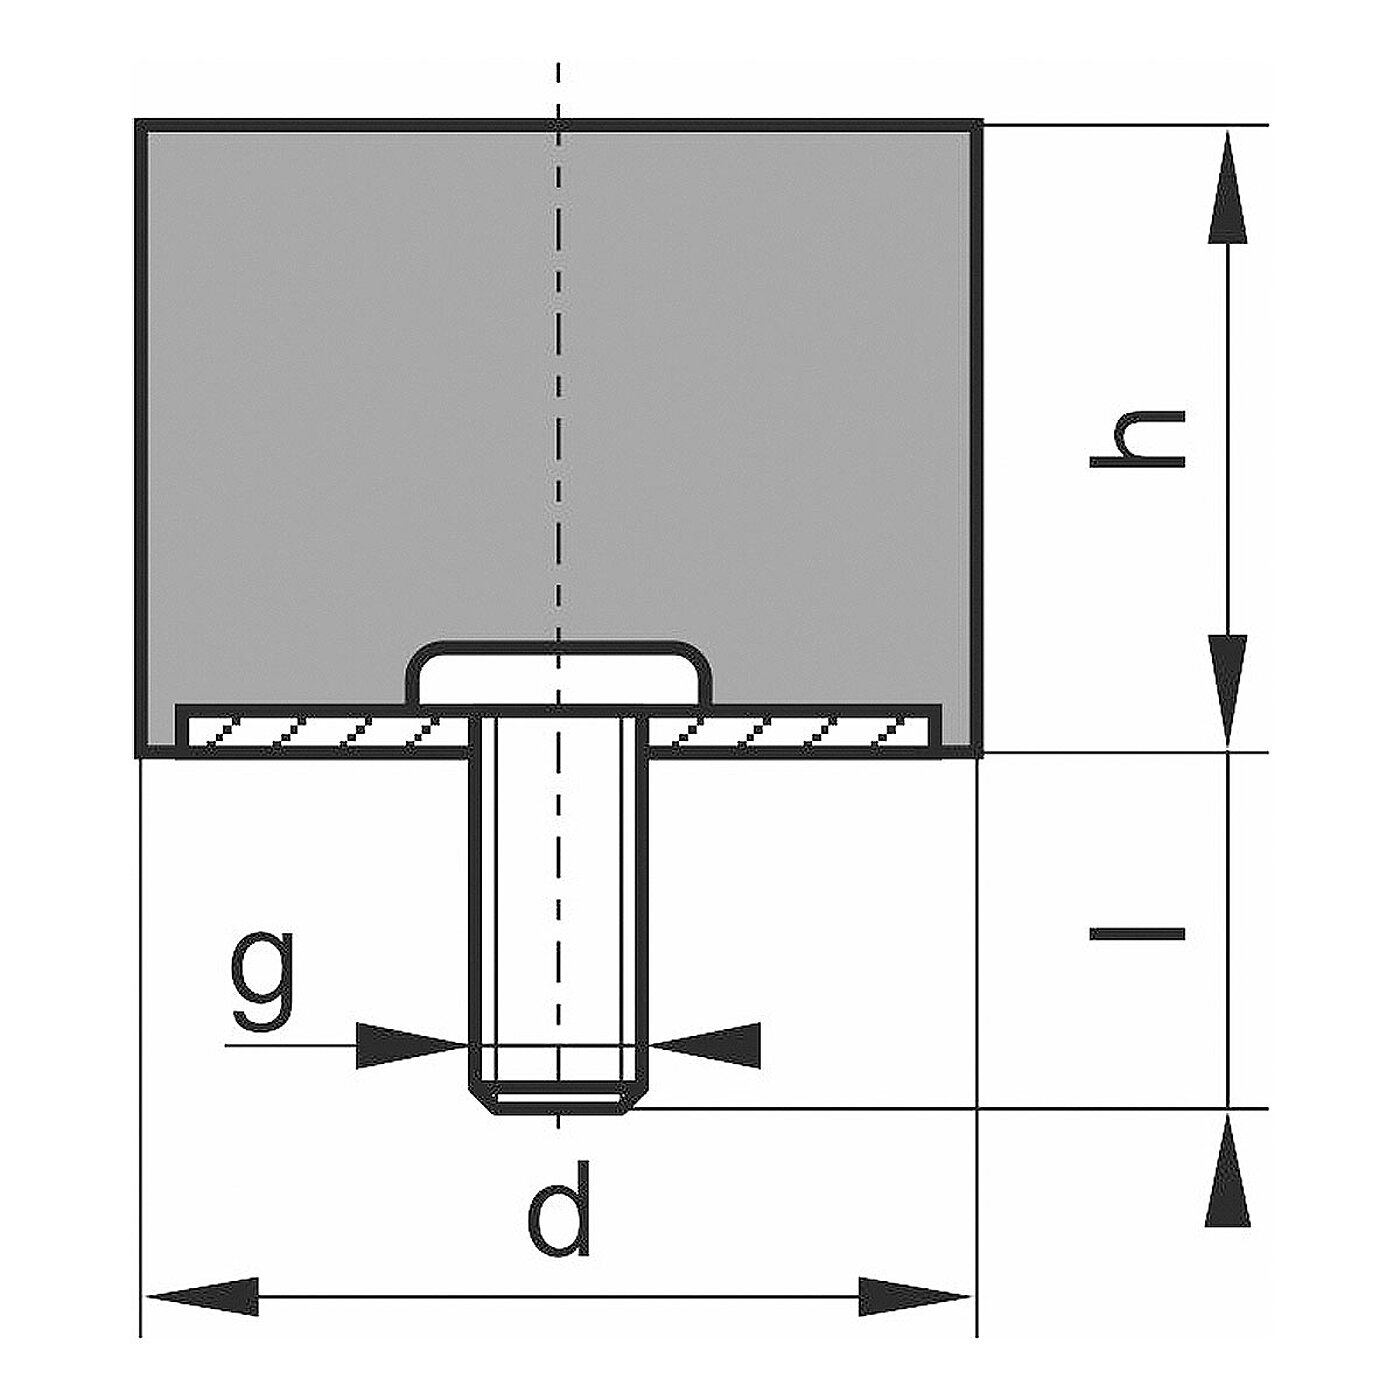 schematische Zeichnung eines Gummi-Metall-Elementes mit einseitigem Außengewinde und zylindrischem Elastomerkorpus